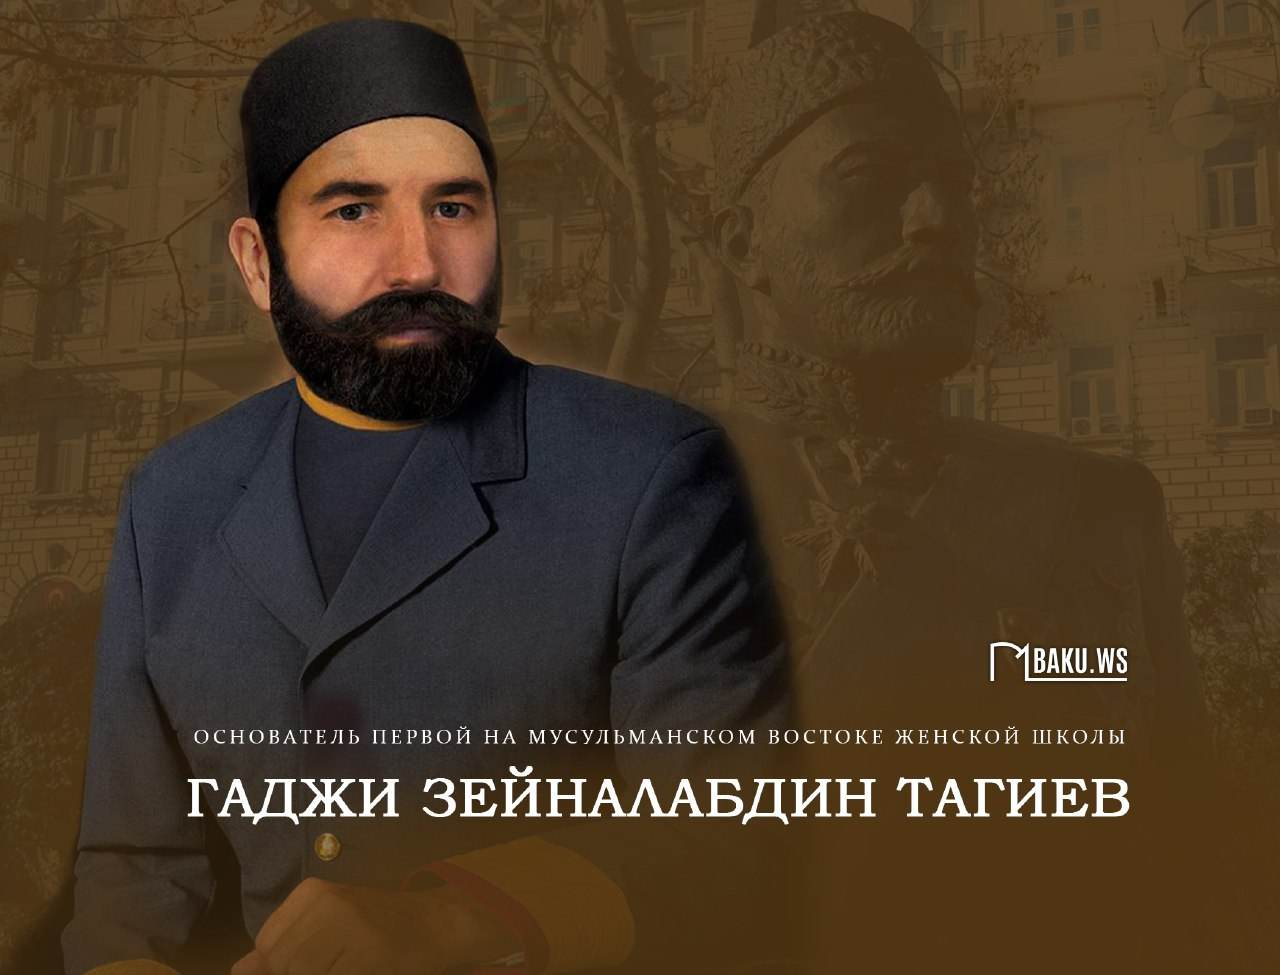 Сегодня день рождения Гаджи Зейналабдина Тагиева